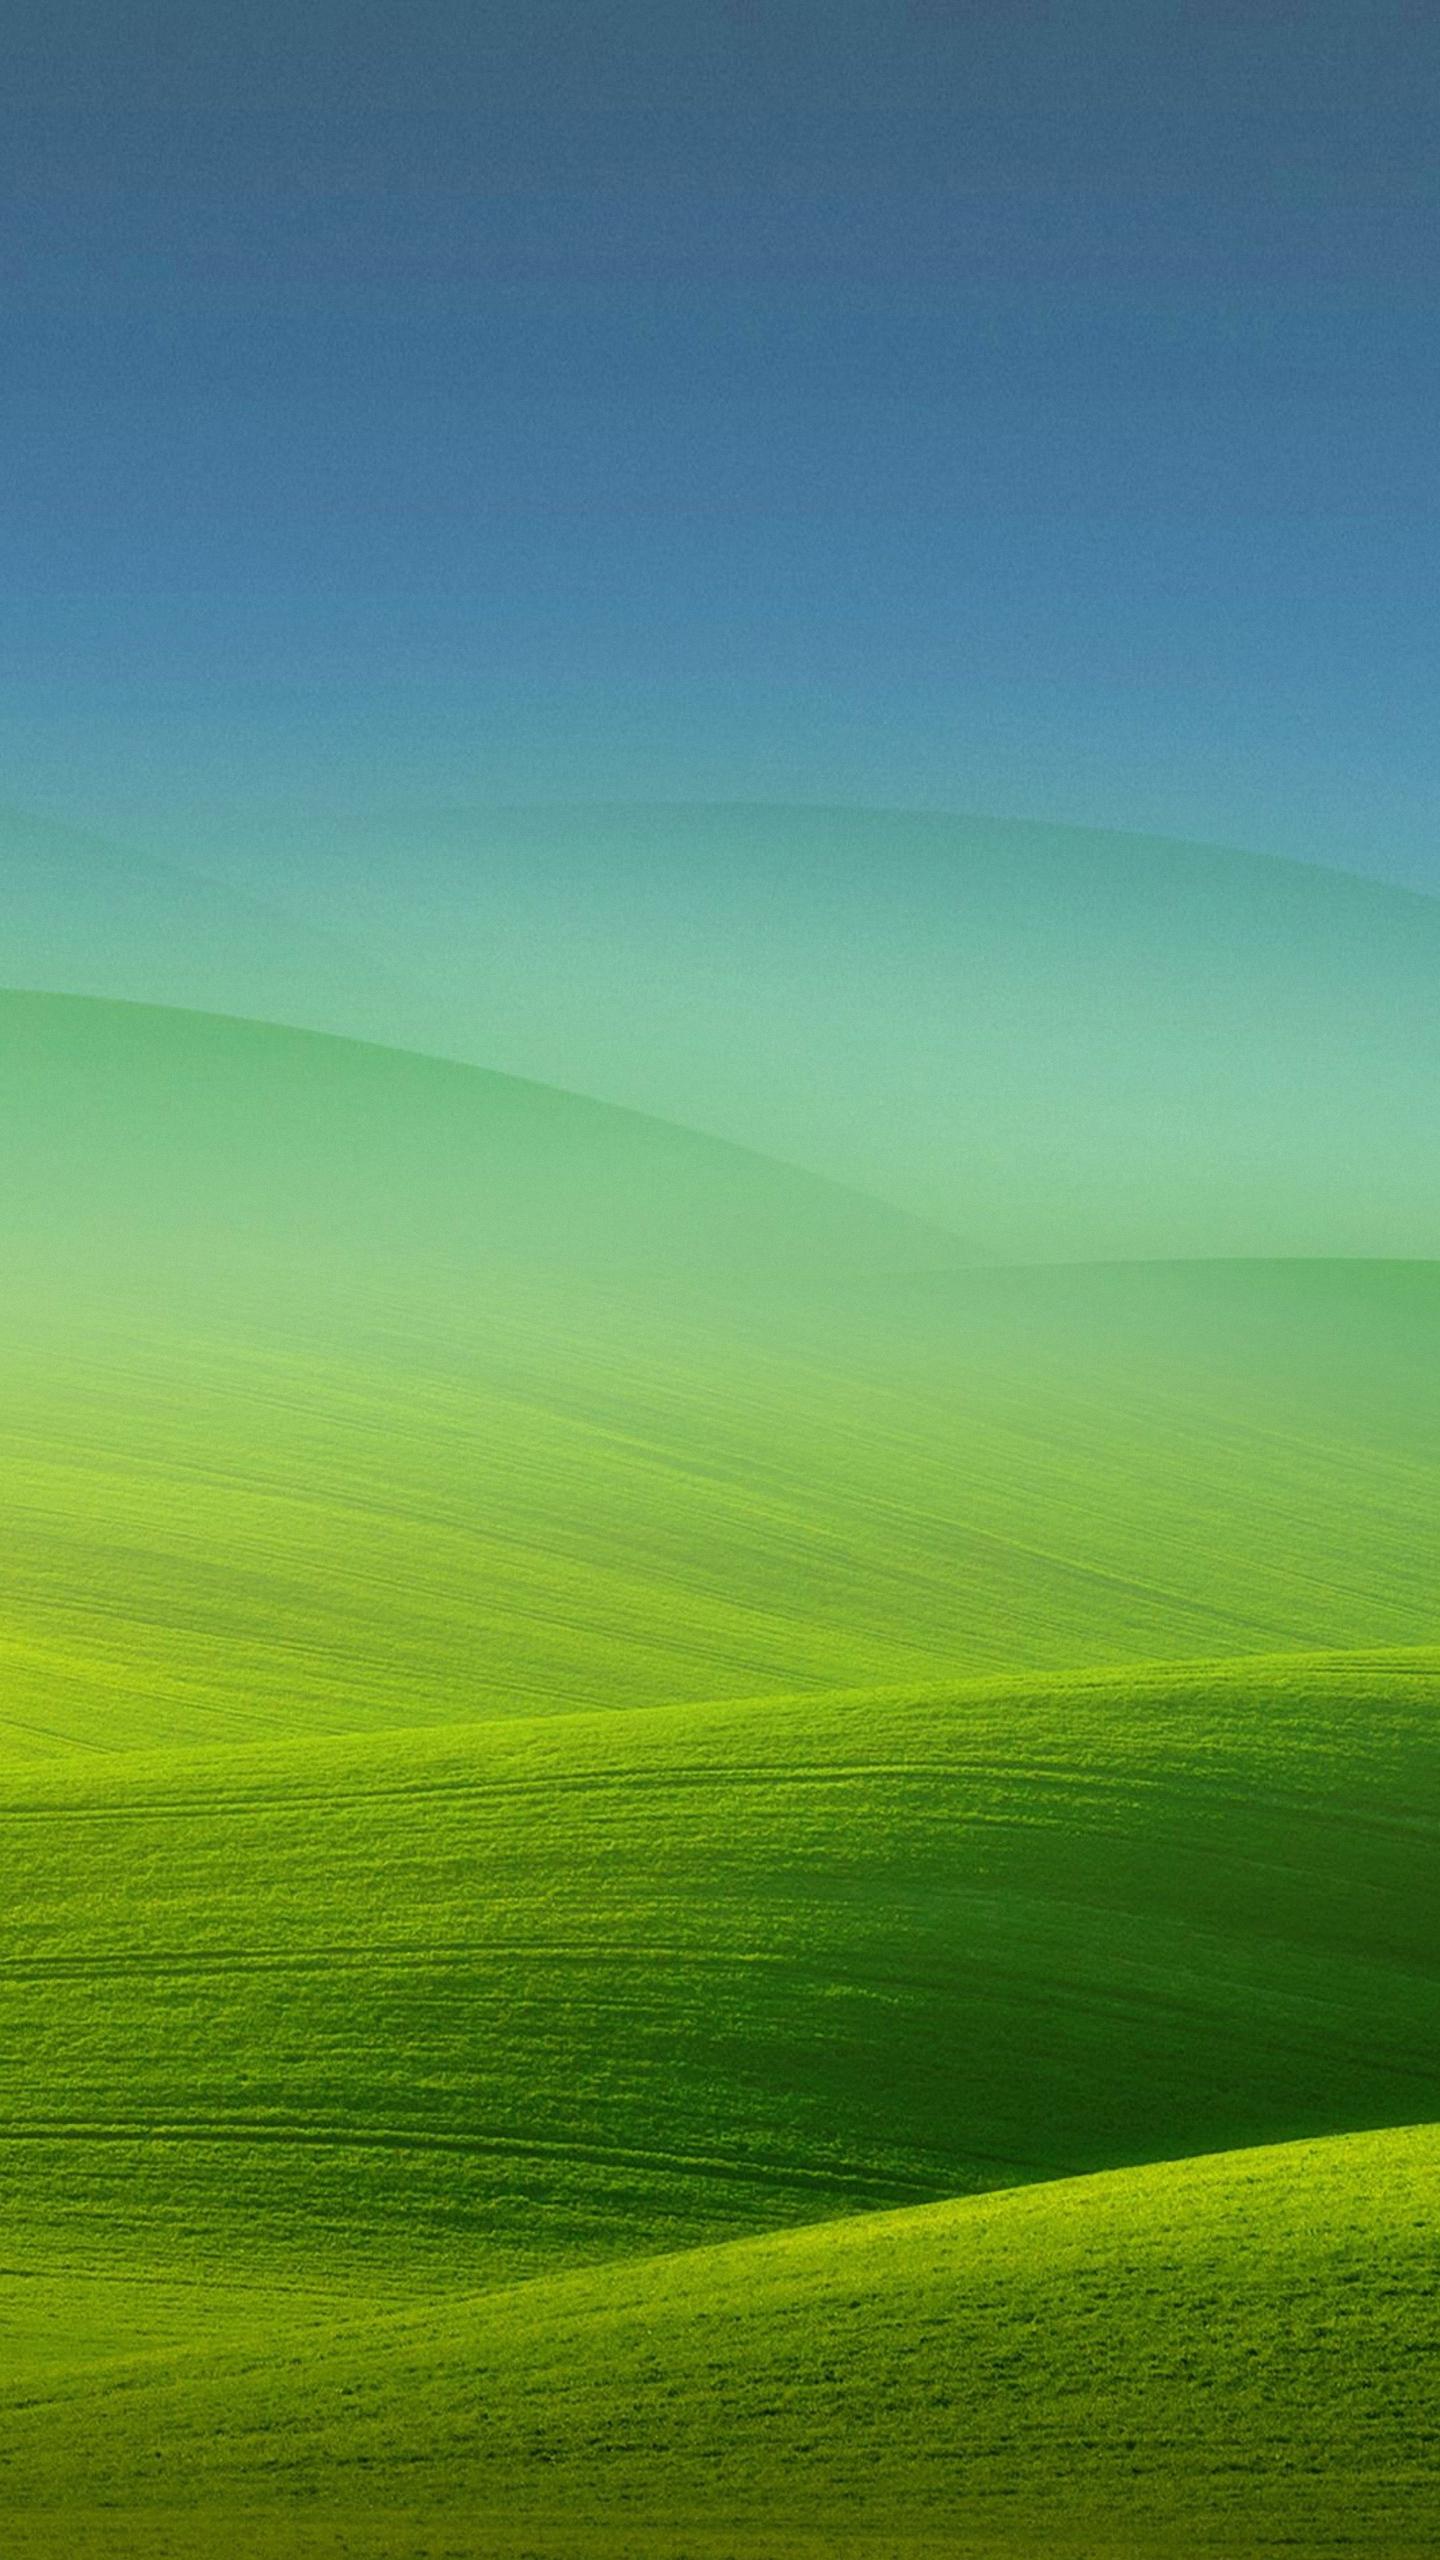 htc wallpaper,green,grassland,sky,nature,field